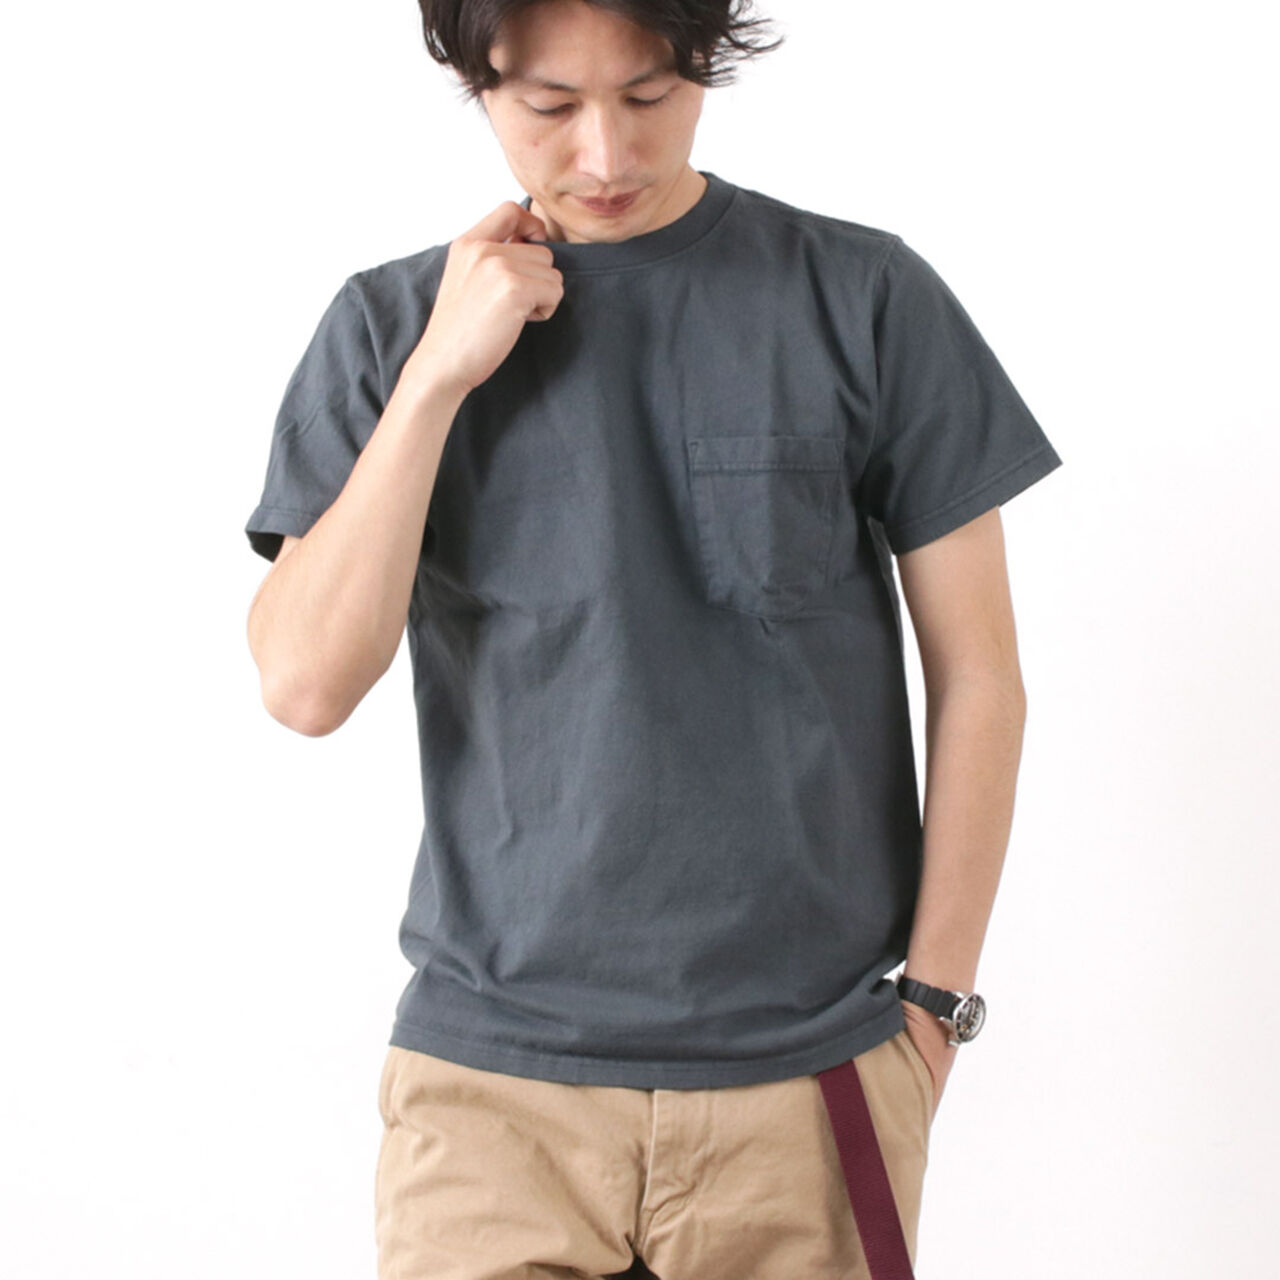 Pocket T-shirt Short Sleeve,Charcoal, large image number 0